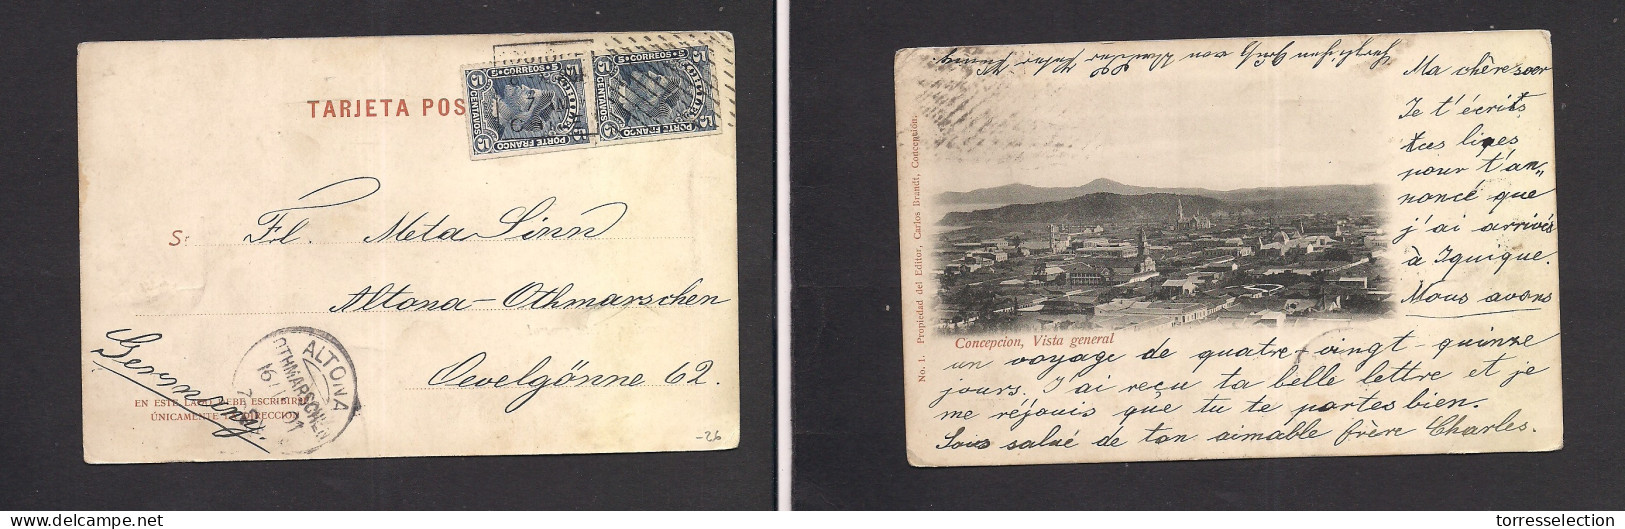 Chile - XX. 1901 (8 Oct) Iquique - Germany, Altona (16 Nov) Multifkd Ppc. Early Concepcion Pcard. Fine. - Chile